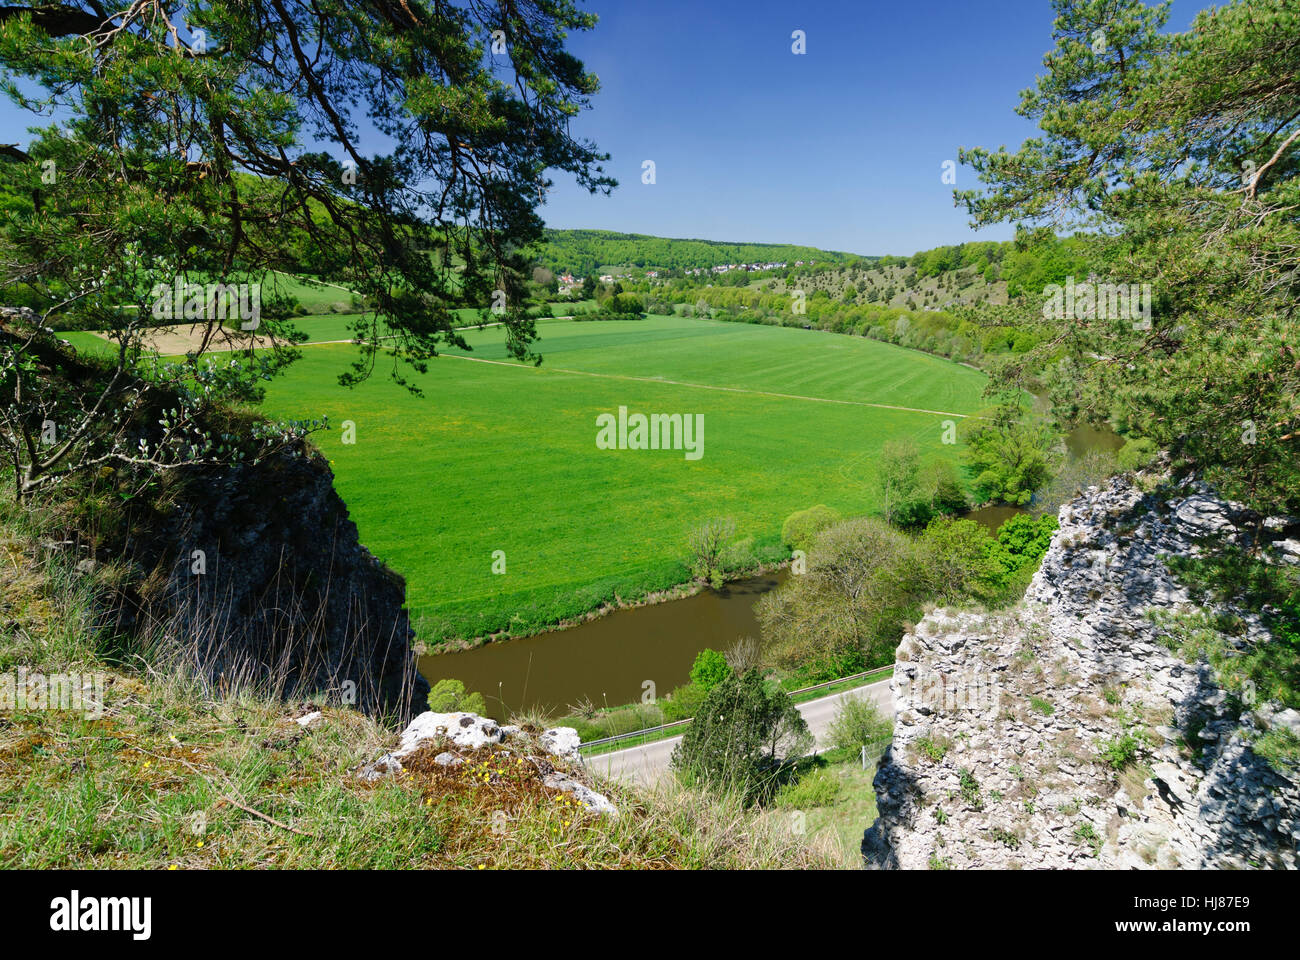 Solnhofen: Altmühl Valley with limestone rocks, Mittelfranken, Middle Franconia, Bayern, Bavaria, Germany Stock Photo